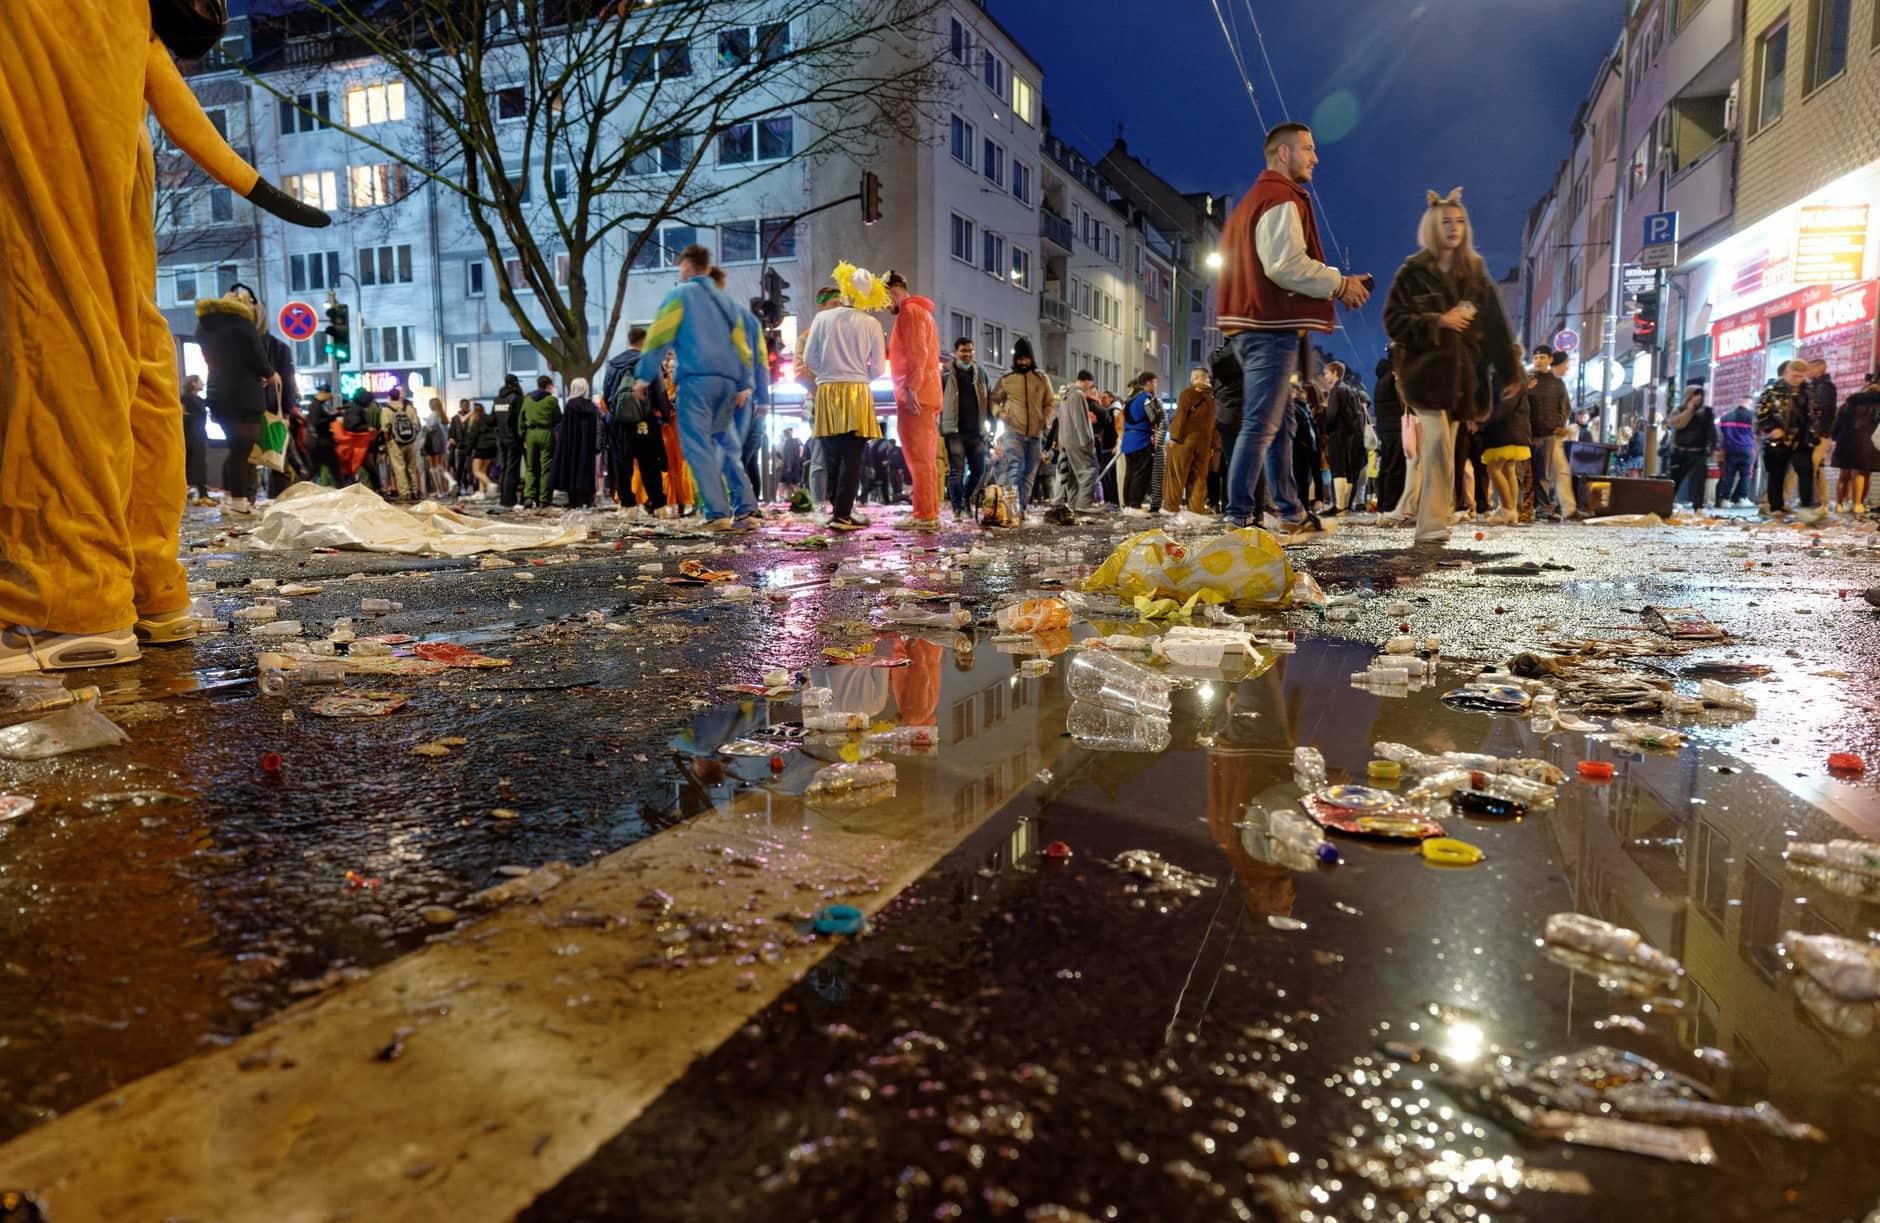 Karneval in Köln - Weiberfastnacht